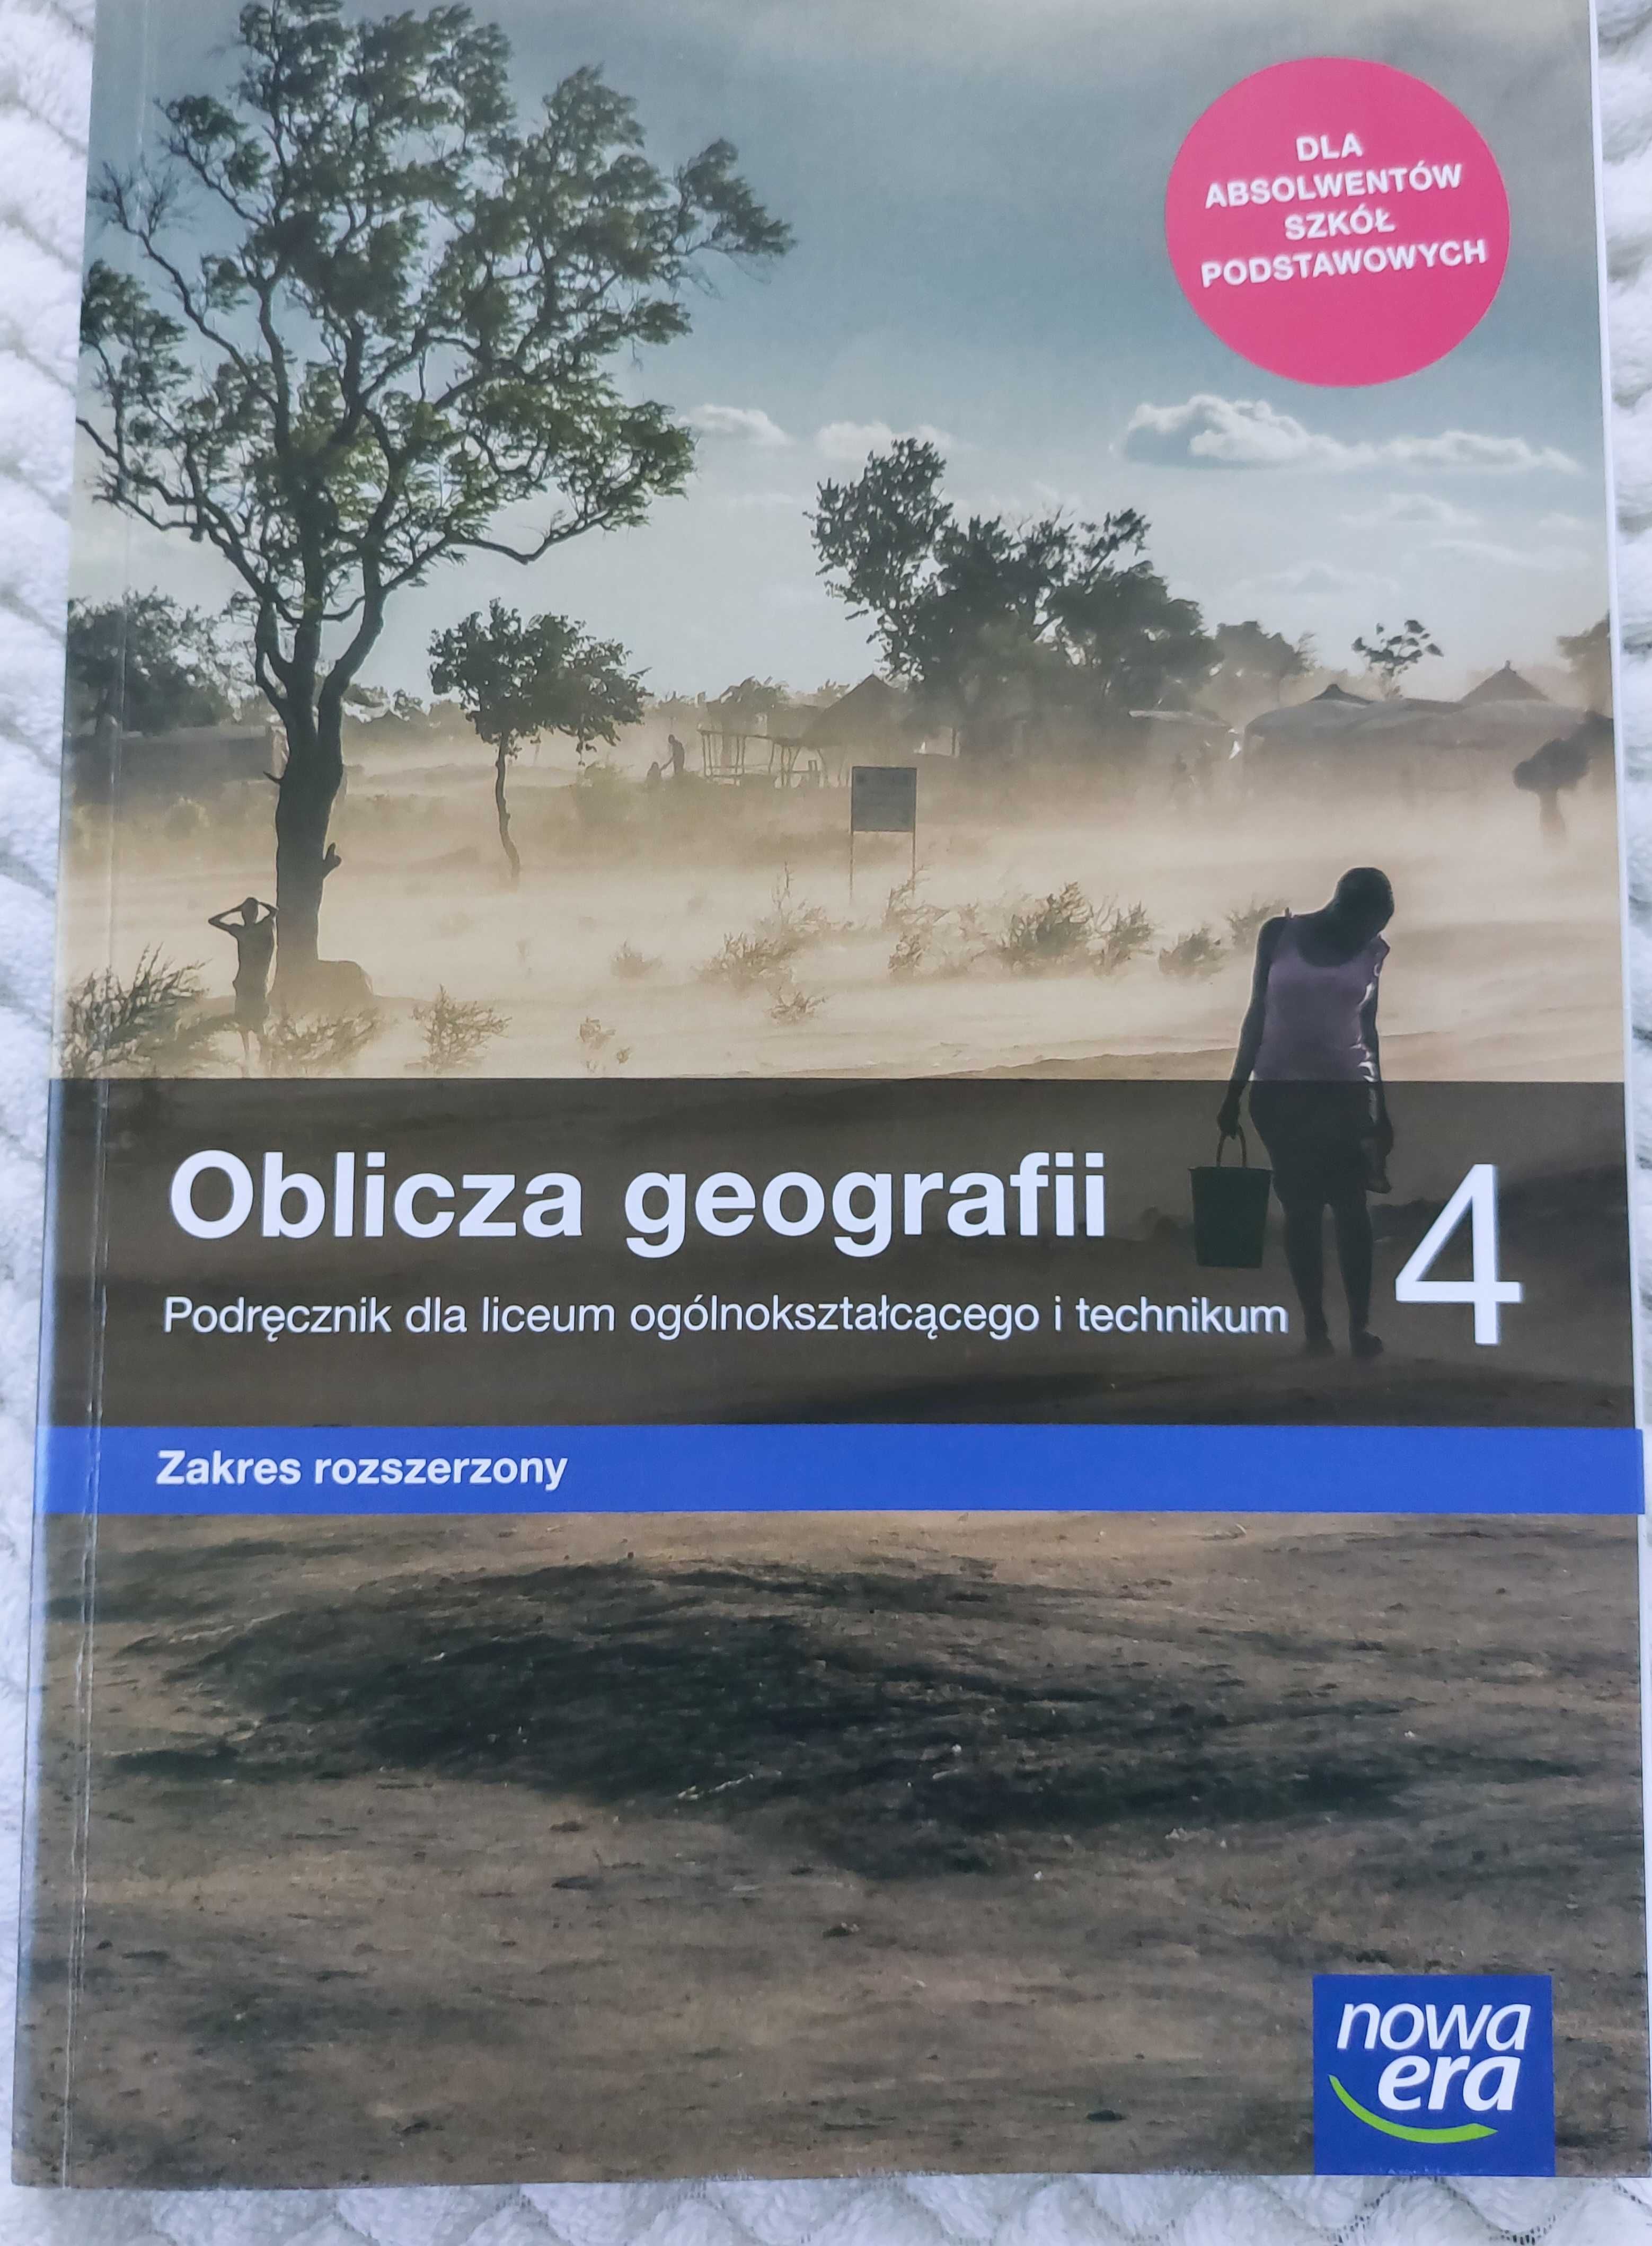 OBLICZA GEOGRAFII 4 podręcznik do geografii, zakres rozszerzony